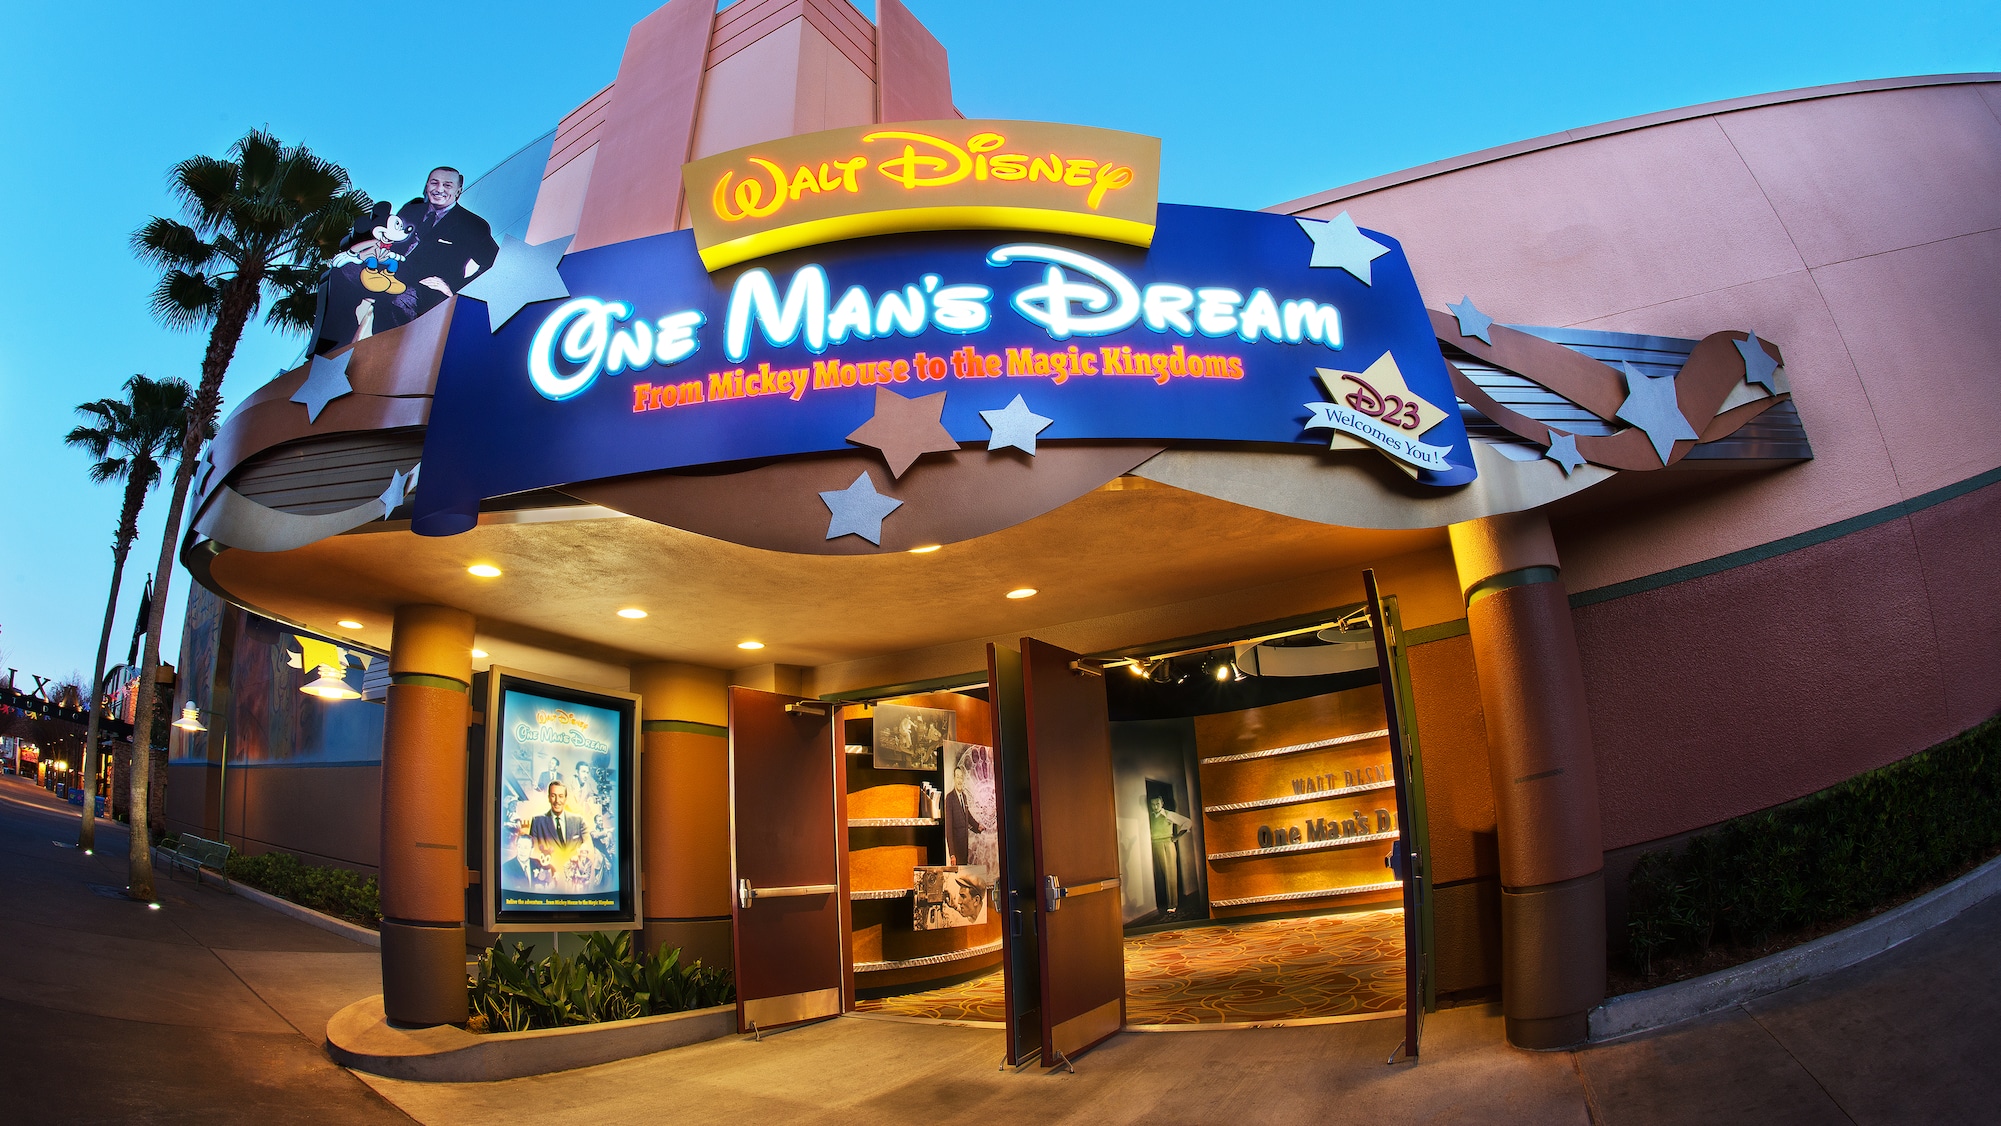 Disney Hollywood Studios ganha preview center de futuras atrações, no lugar da One’s Man Dream